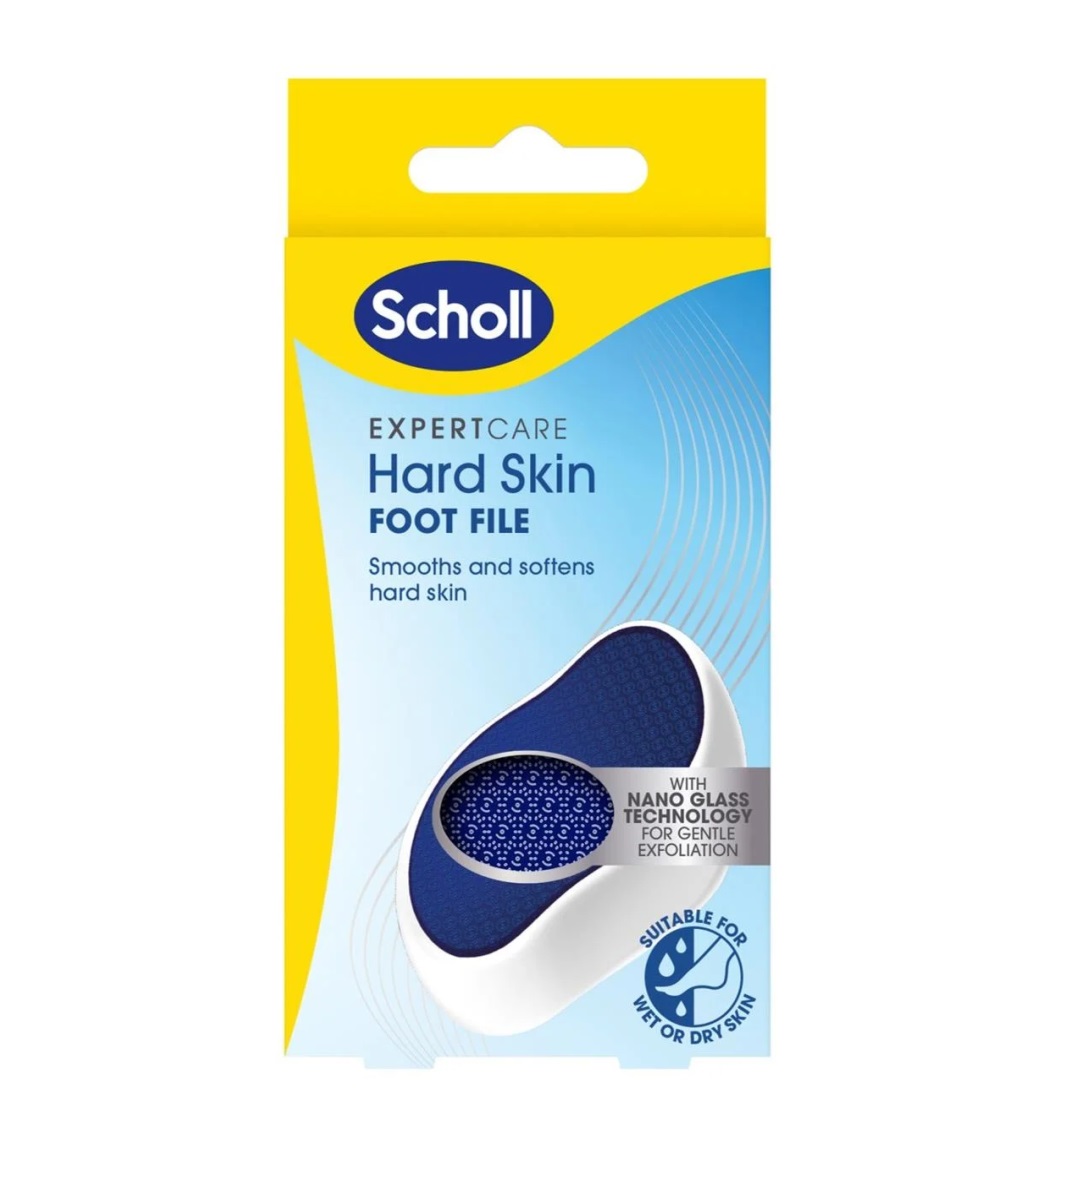 Scholl Manuálny pilník na chodidlá s nanotechnológiou Expert Care Hard Skin (Foot File)